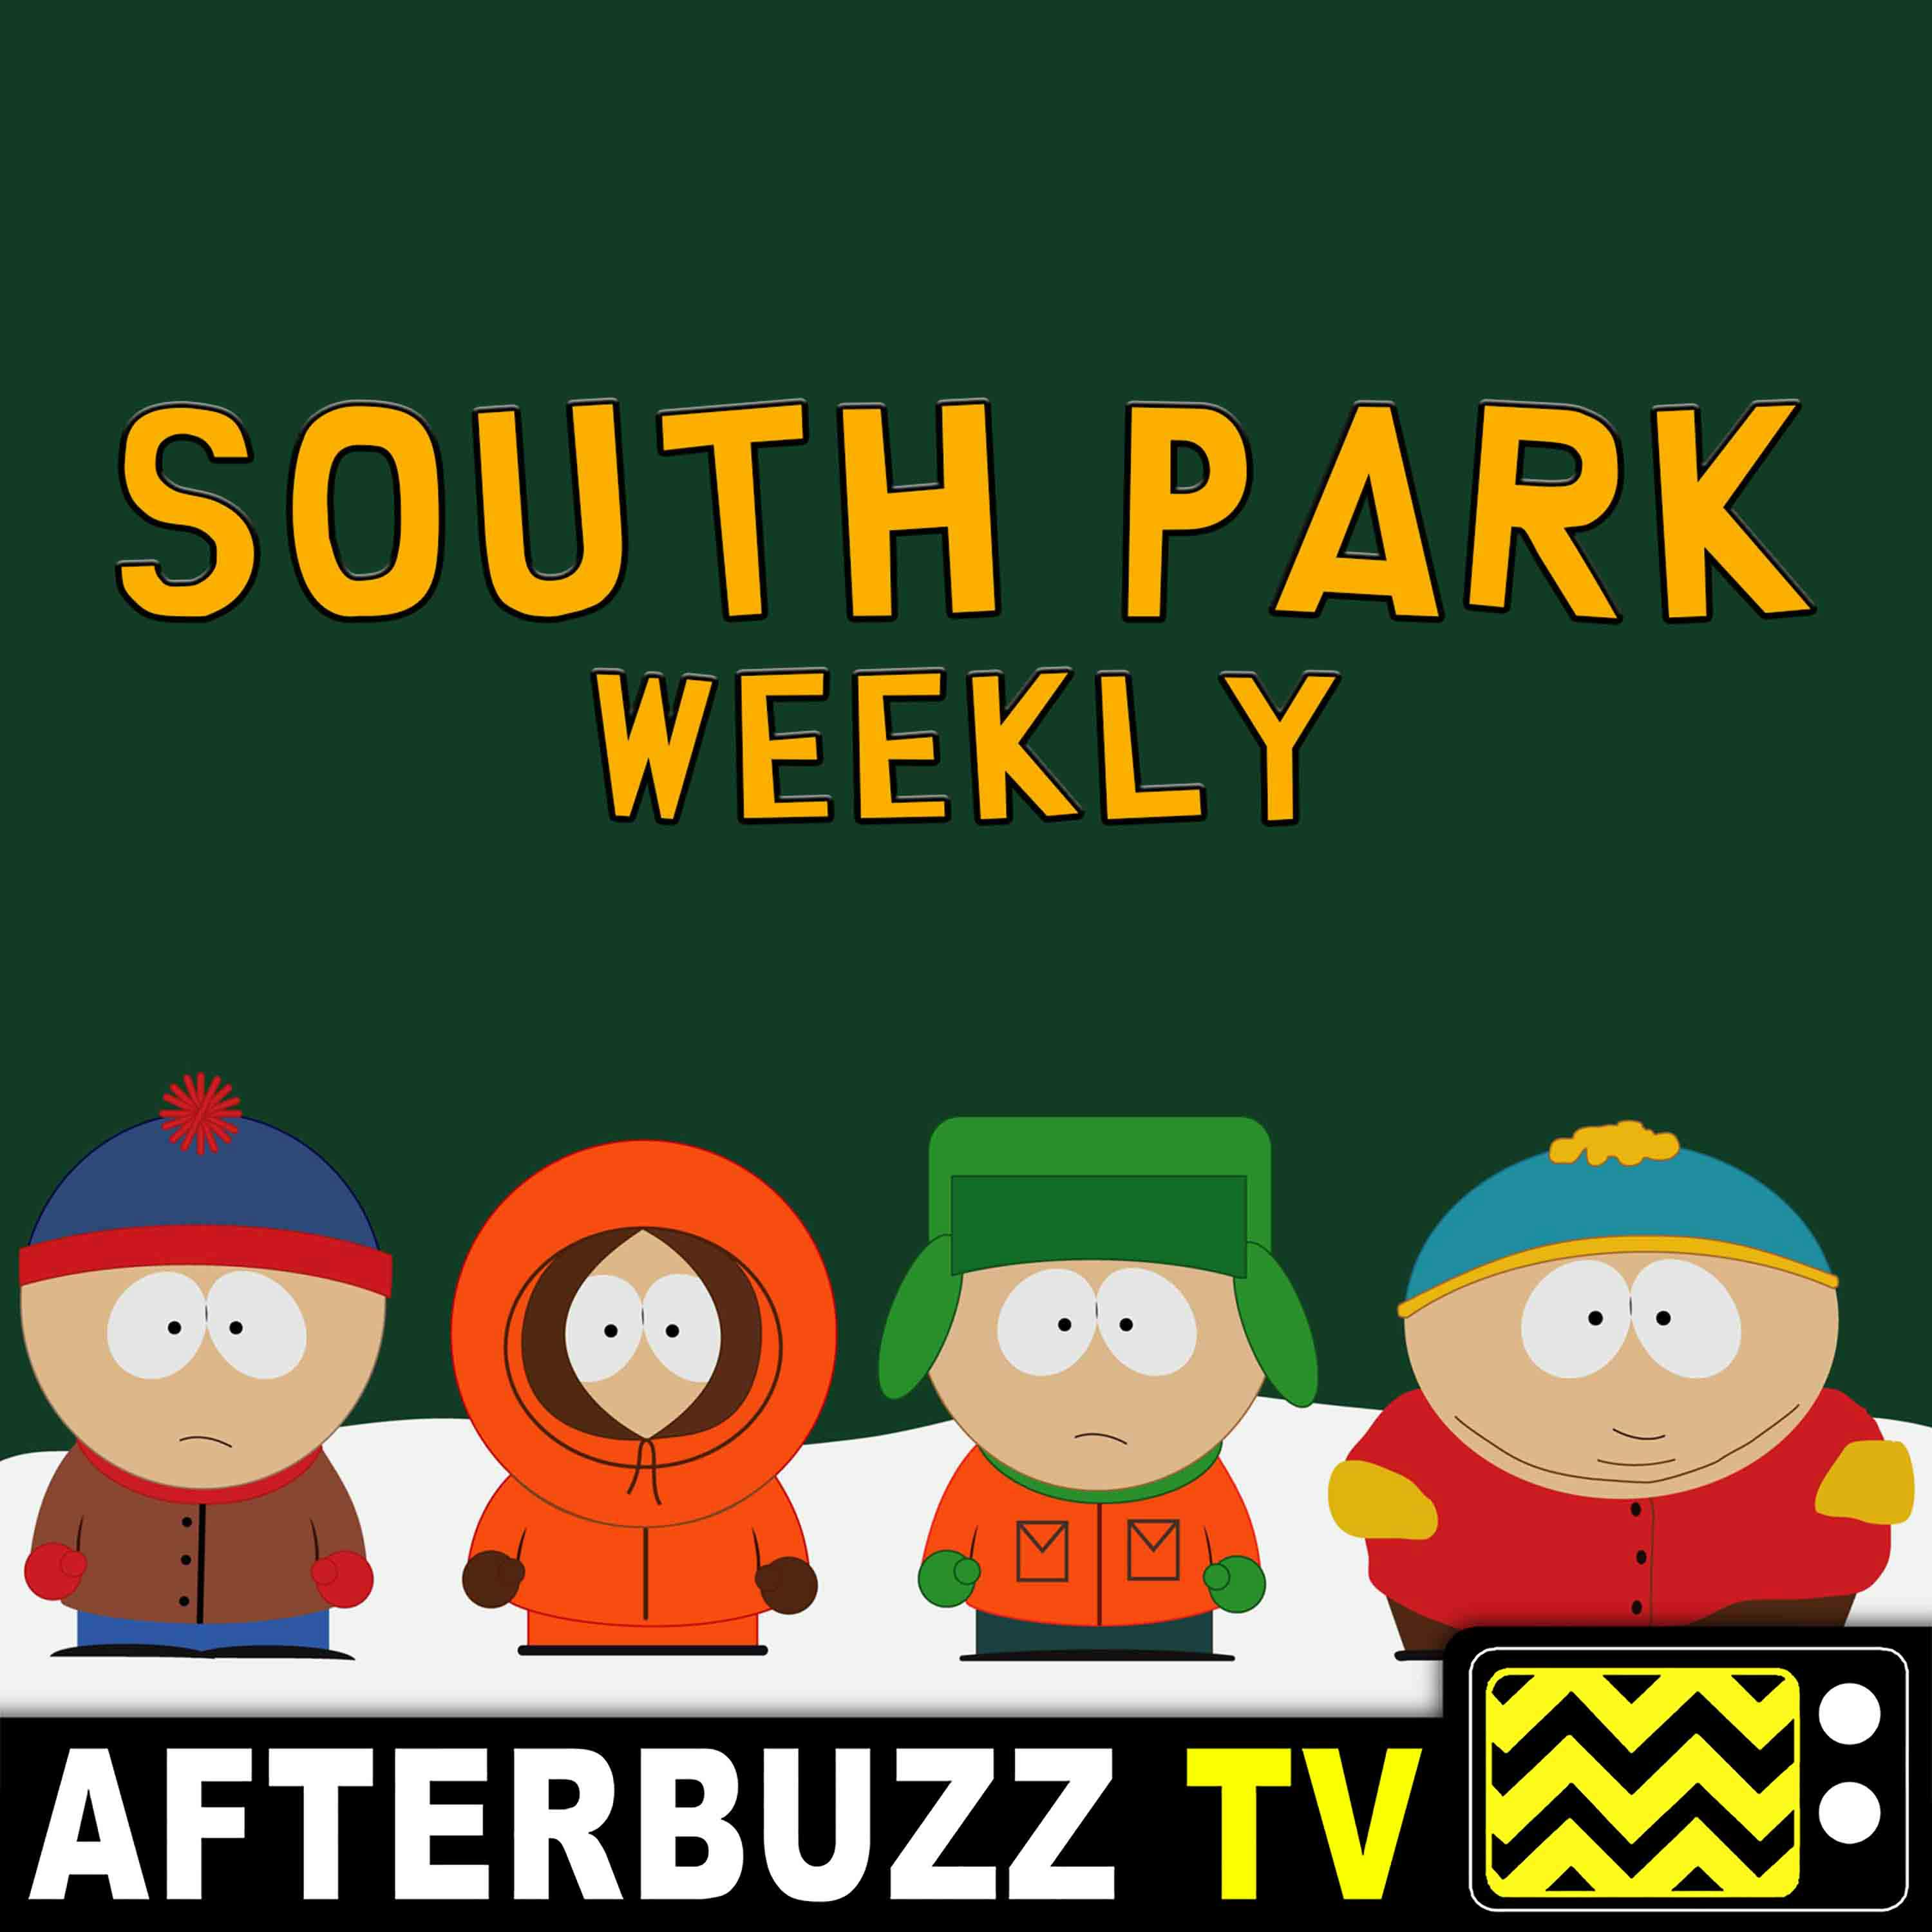 ”Let Them Eat Goo” Season 23 Episode 4 ’South Park’ Review